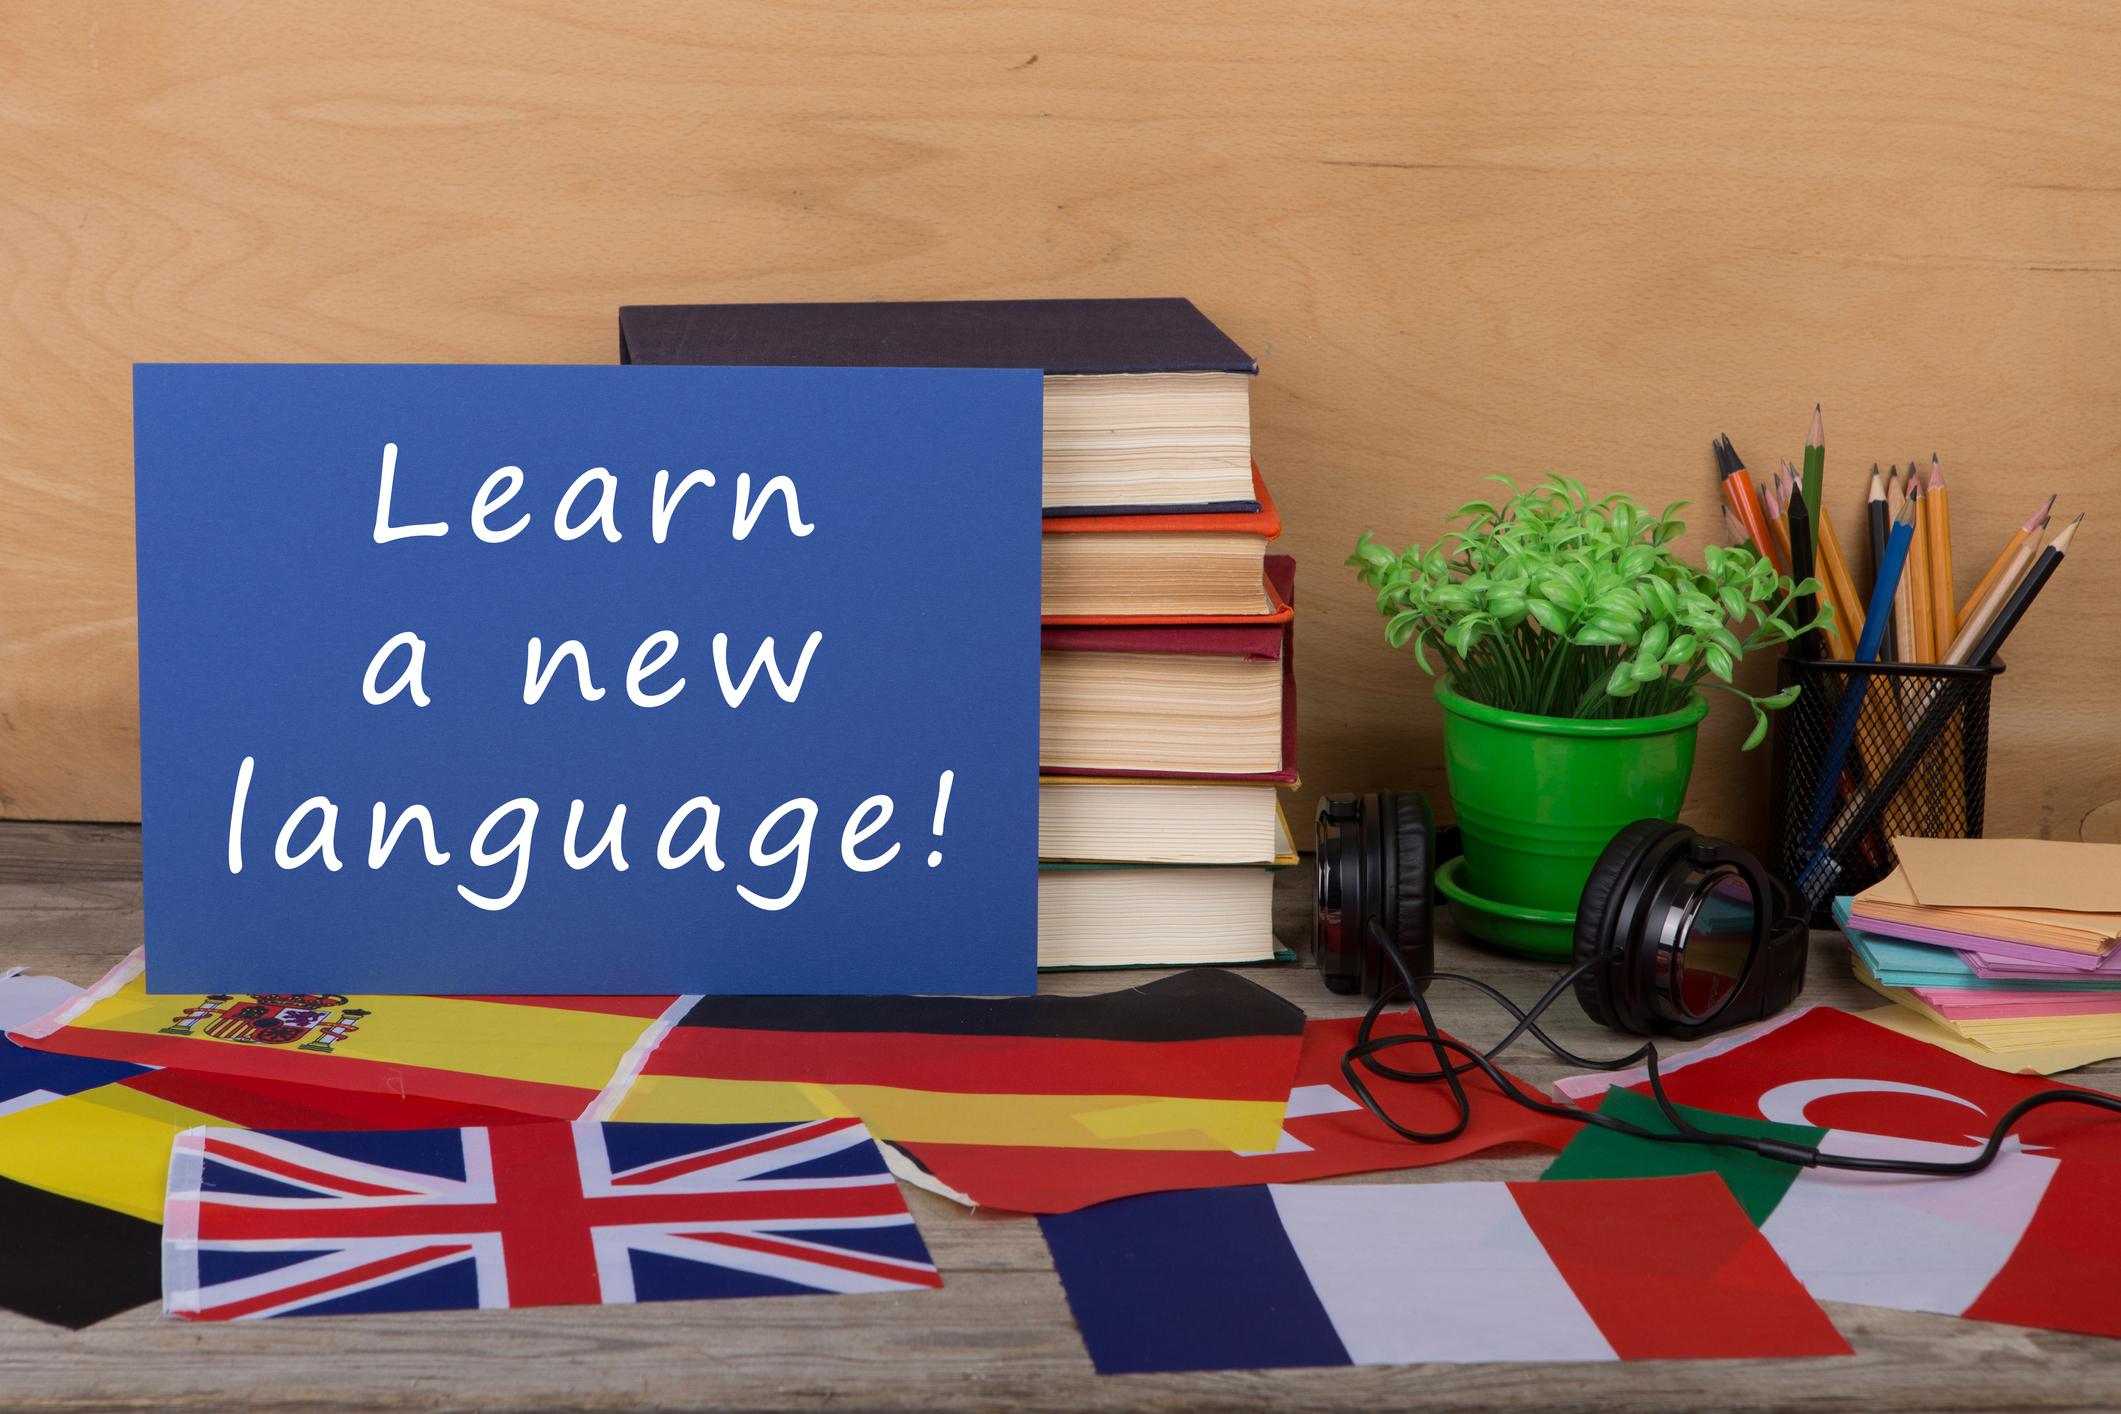 My new language. Изучение нового языка. Изучение языков карта желаний. Выучить новый язык. Learn a New language.